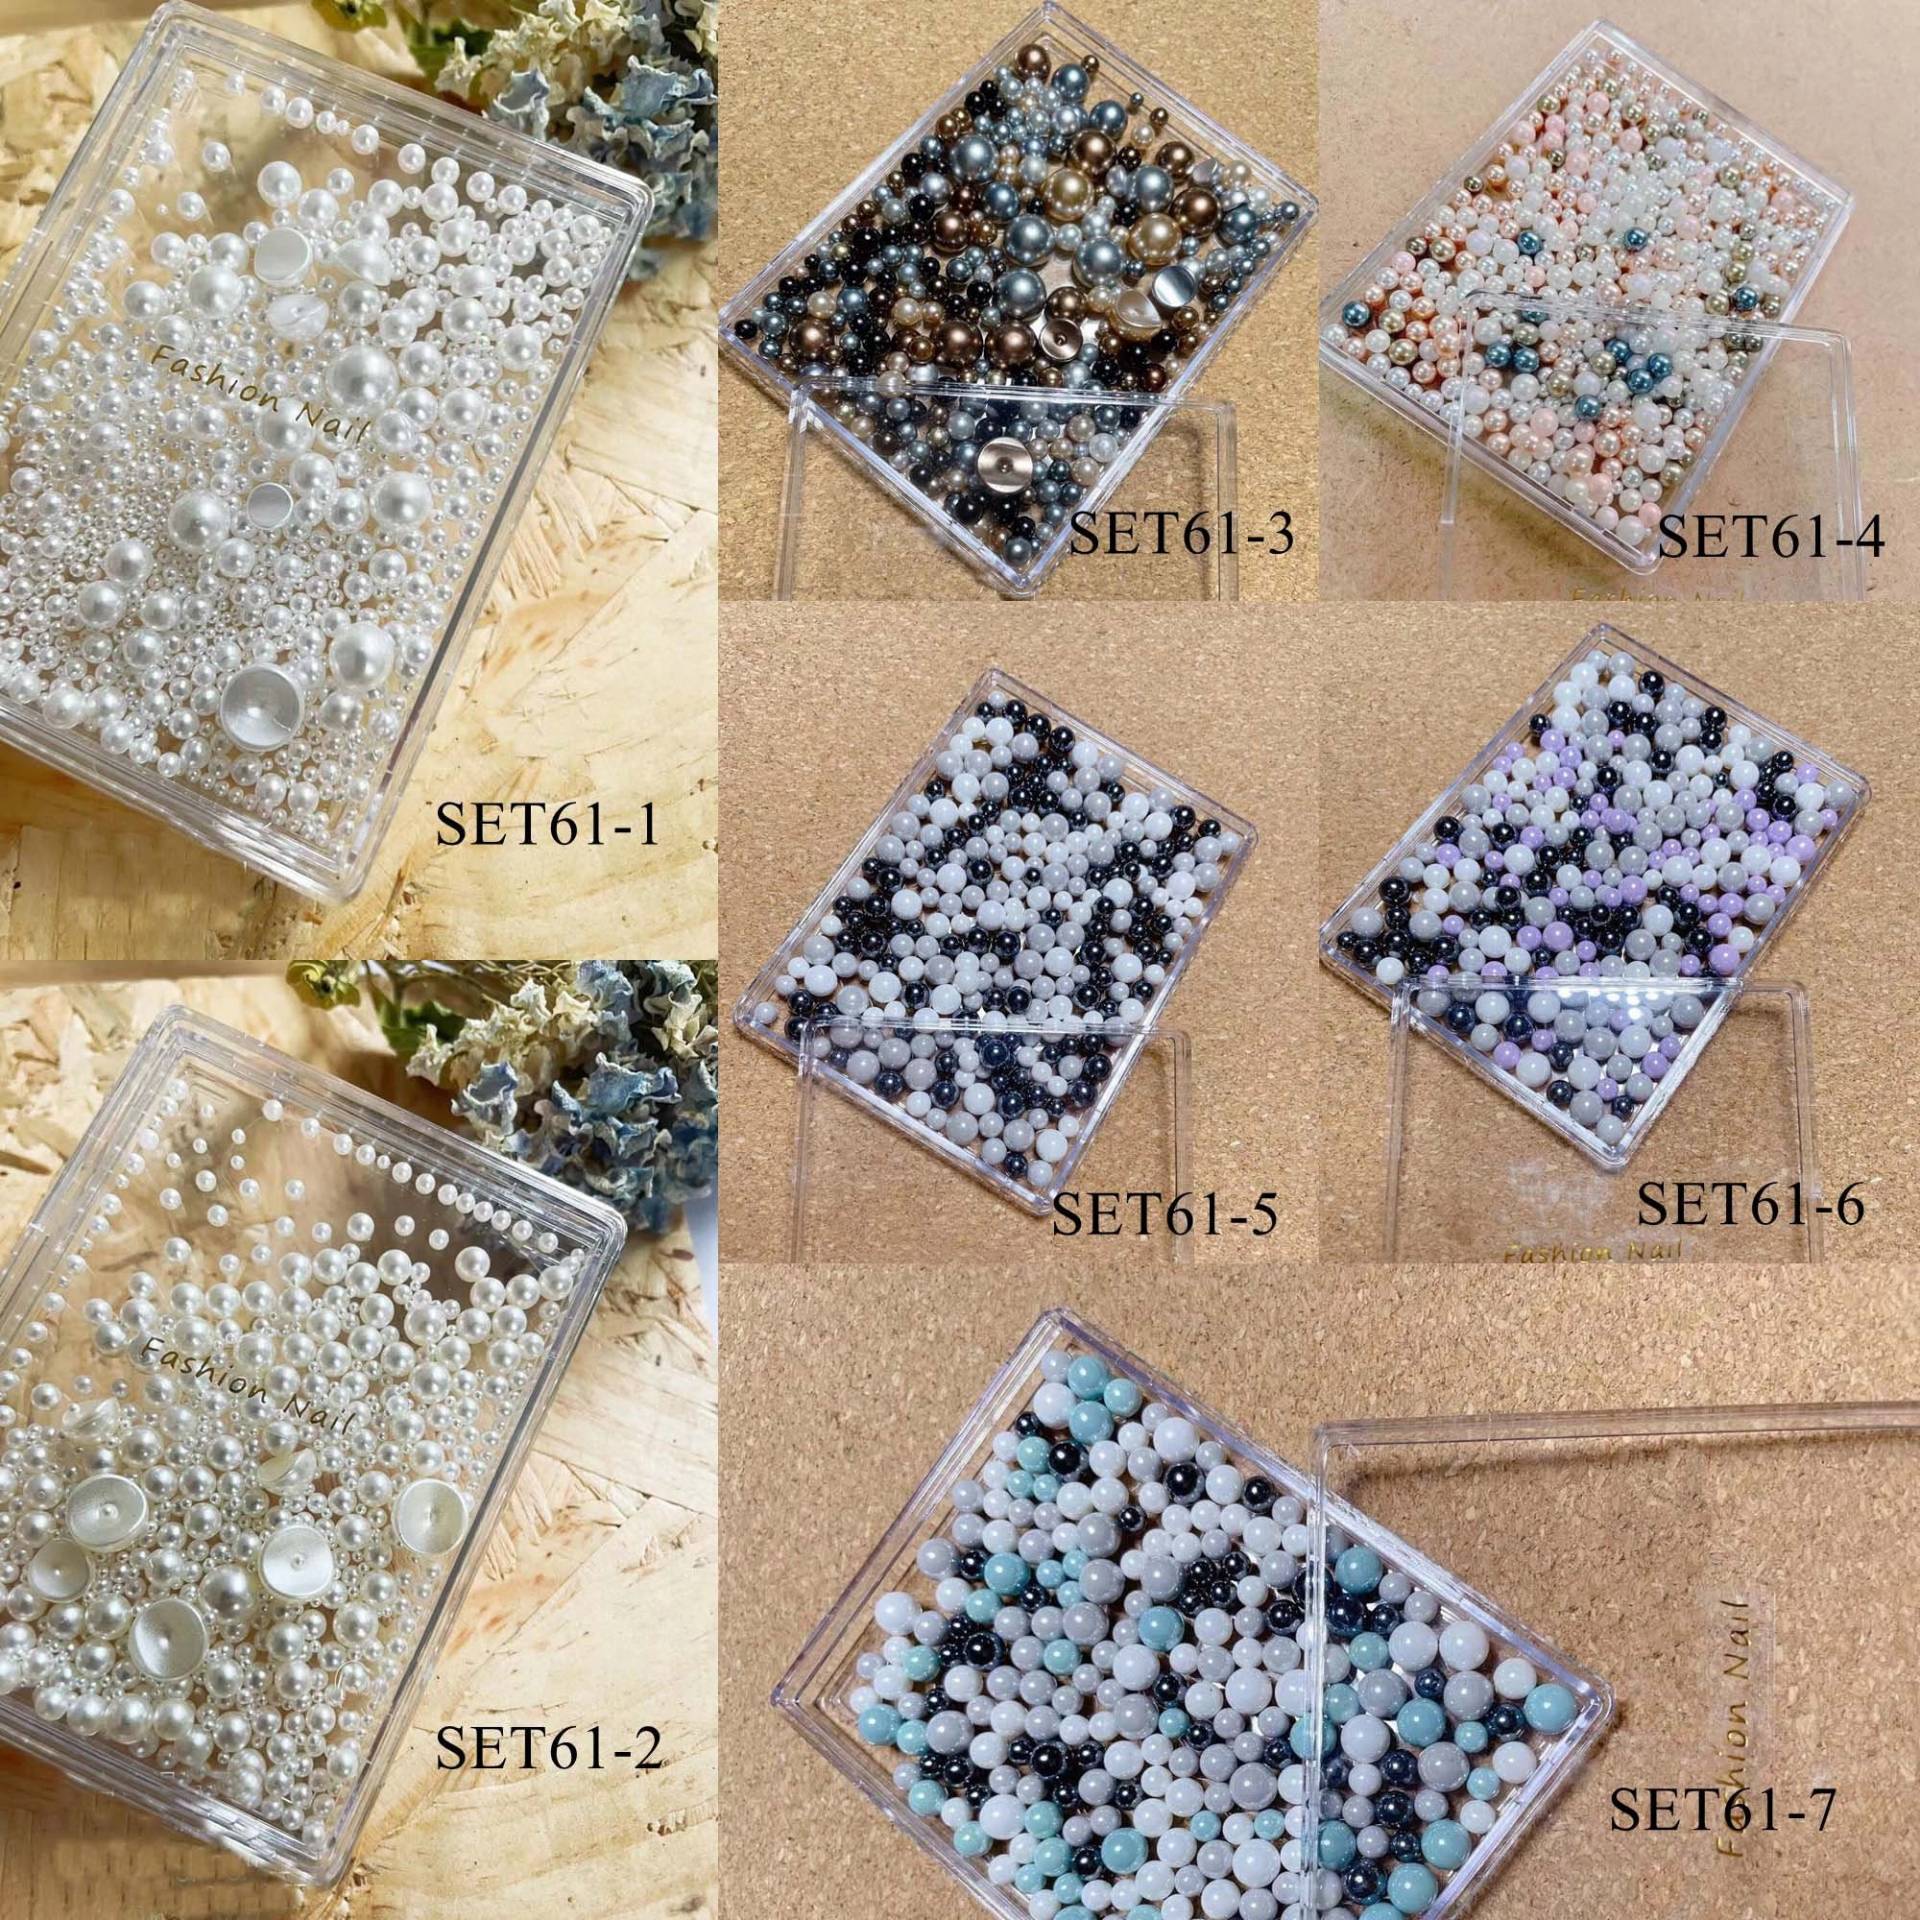 1 Set Nail Art Mixed Kunststoff Kugel Perlen Dekoration Verschiedene Farben Und Größen Gemischt in Sets Set61 von Etsy - nailartfairy